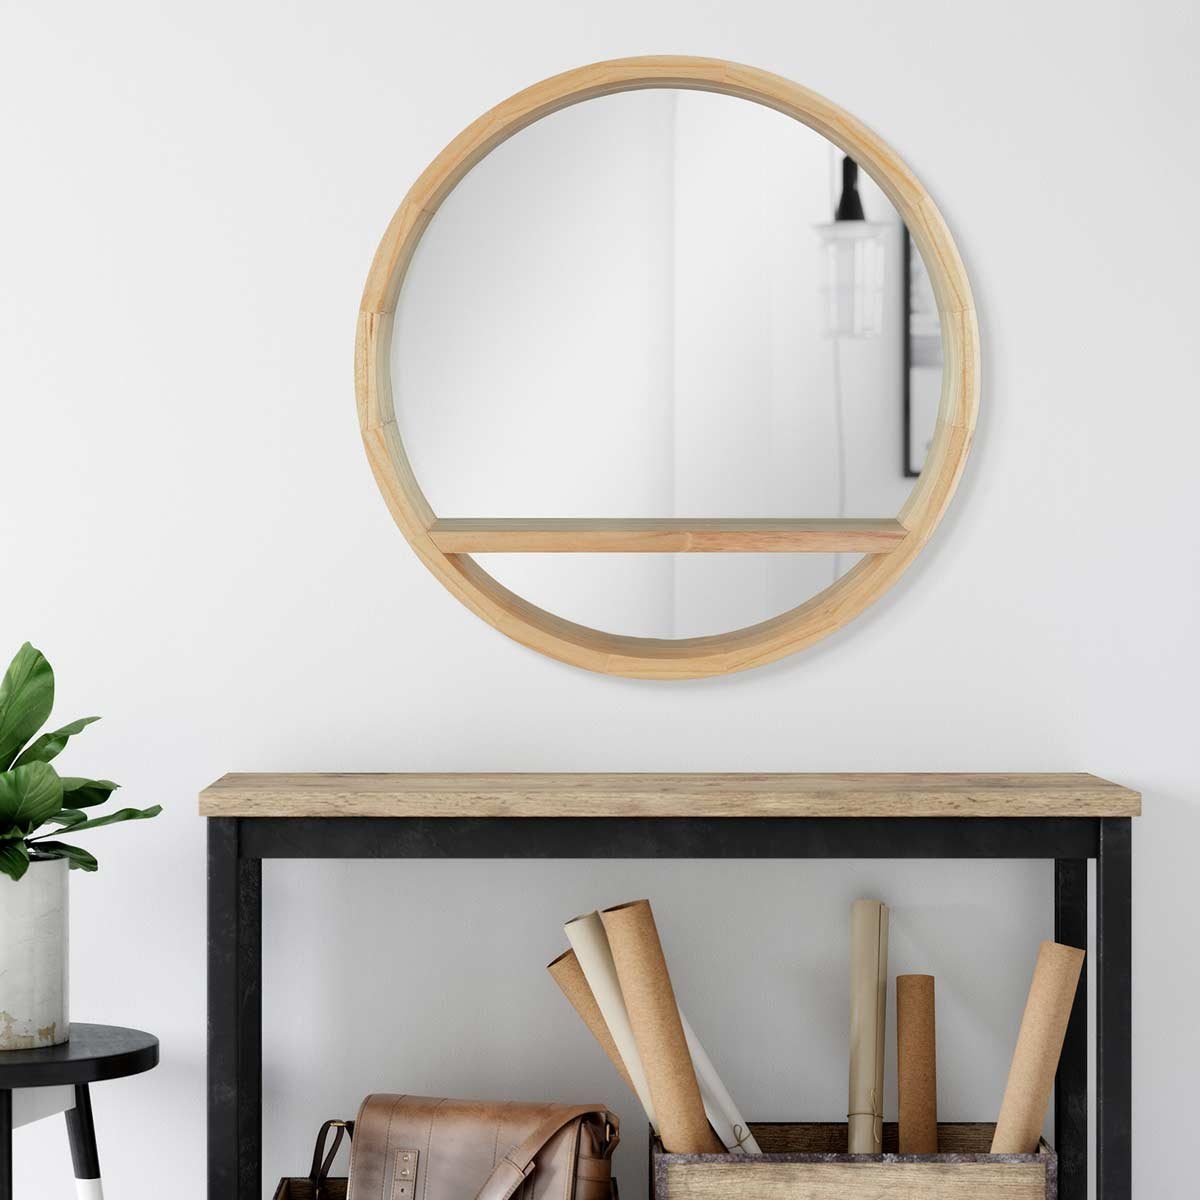 PHOTOLINI Spiegel mit Holzrahmen praktischer Ablagefläche, und Naturholz Wandspiegel